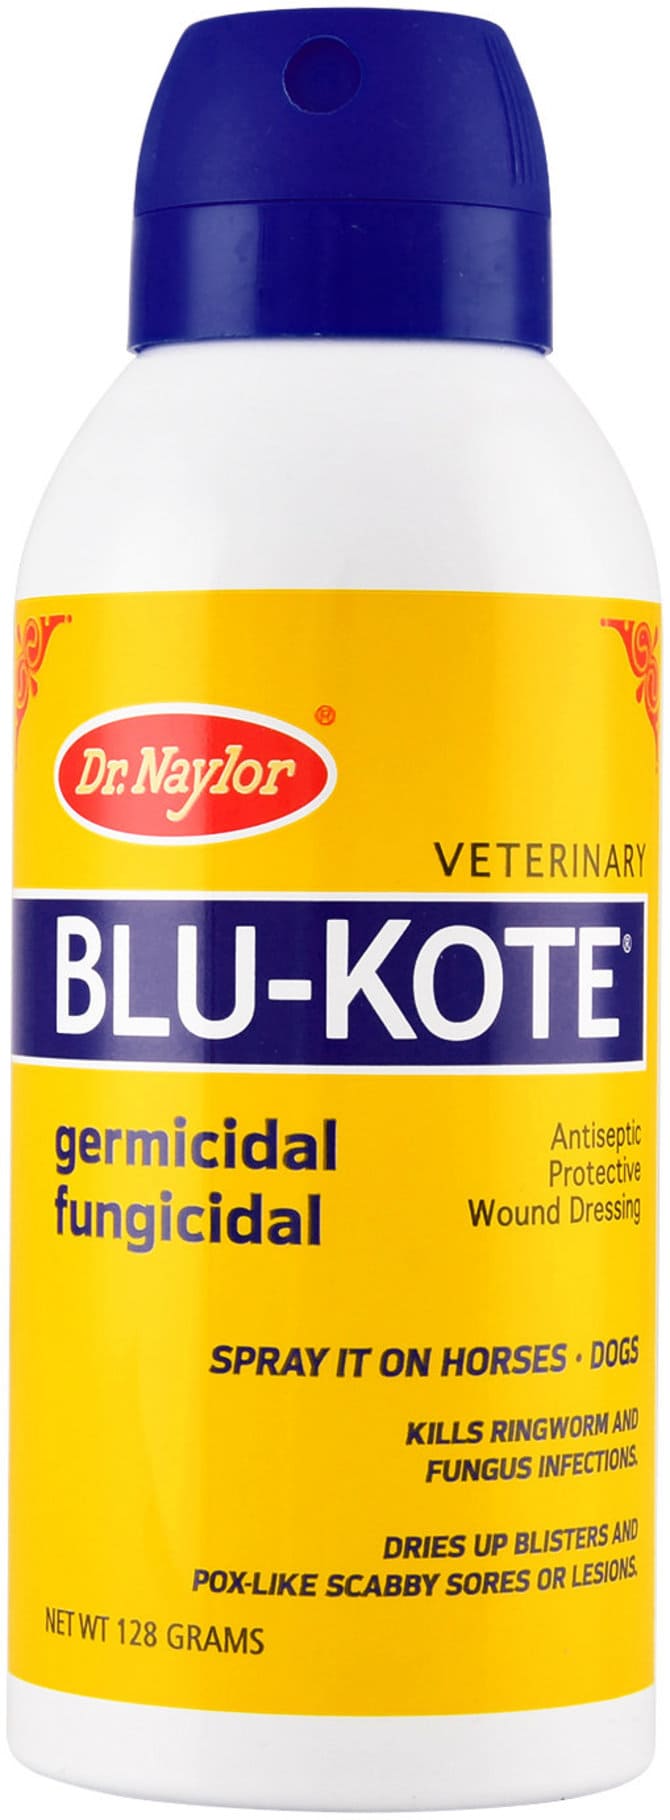 Dr. Naylor Blu-Kote 5 oz germicidal/fungicidal aerosol 1